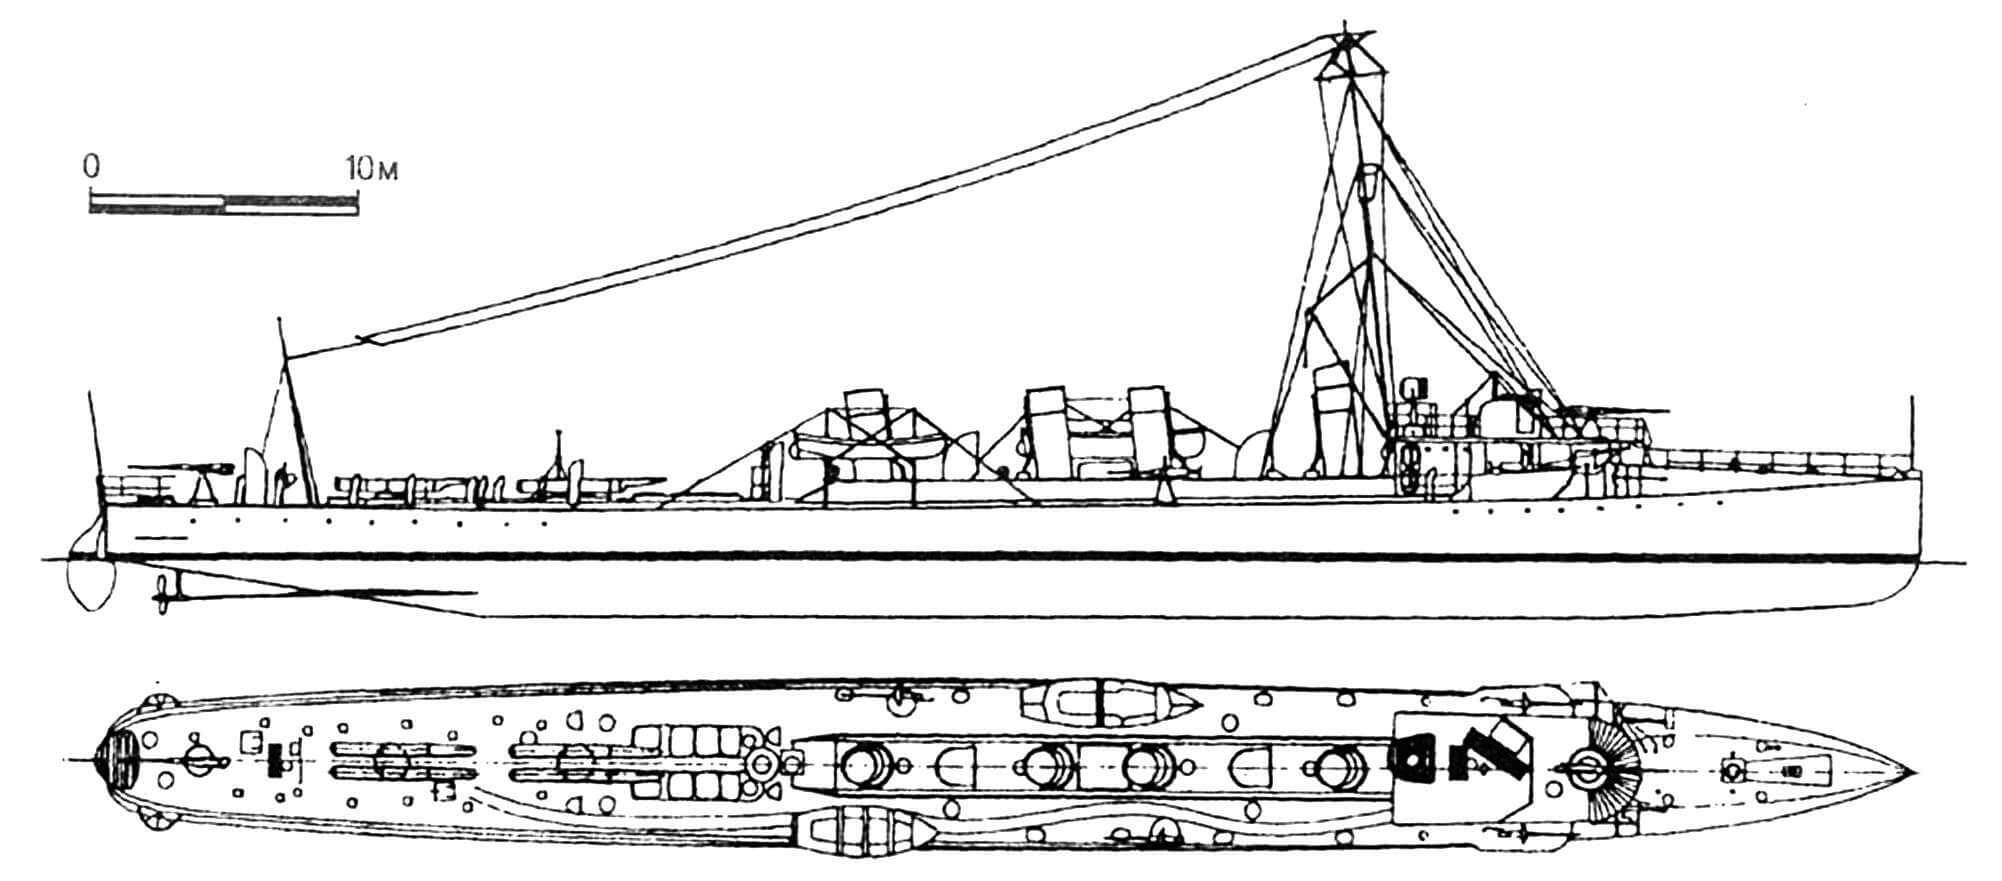 141. Эскадренный миноносец «Вале», Швеция, 1908 г. Построен в Швеции фирмой «Кокумс». Водоизмещение нормальное 430 т, полное 461 т. Длина наибольшая 67,5 м, ширина 6,32 м, осадка 1,8 м. Мощность двухвальной паросиловой установки 7200 л.с., скорость 30 узлов. Вооружение: два 75-мм и четыре 57-мм орудия, четыре торпедных аппарата. Всего построено шесть единиц: «Вале», «Рагнар», «Сигурд», «Видар», «Хугин» и «Мунин». Последние два имели двухвальную паротурбинную установку мощностью 10 000 л.с. и были вооружены четырьмя 75-мм пушками. Исключены из боевого состава флота в 1940 — 1947 годах.